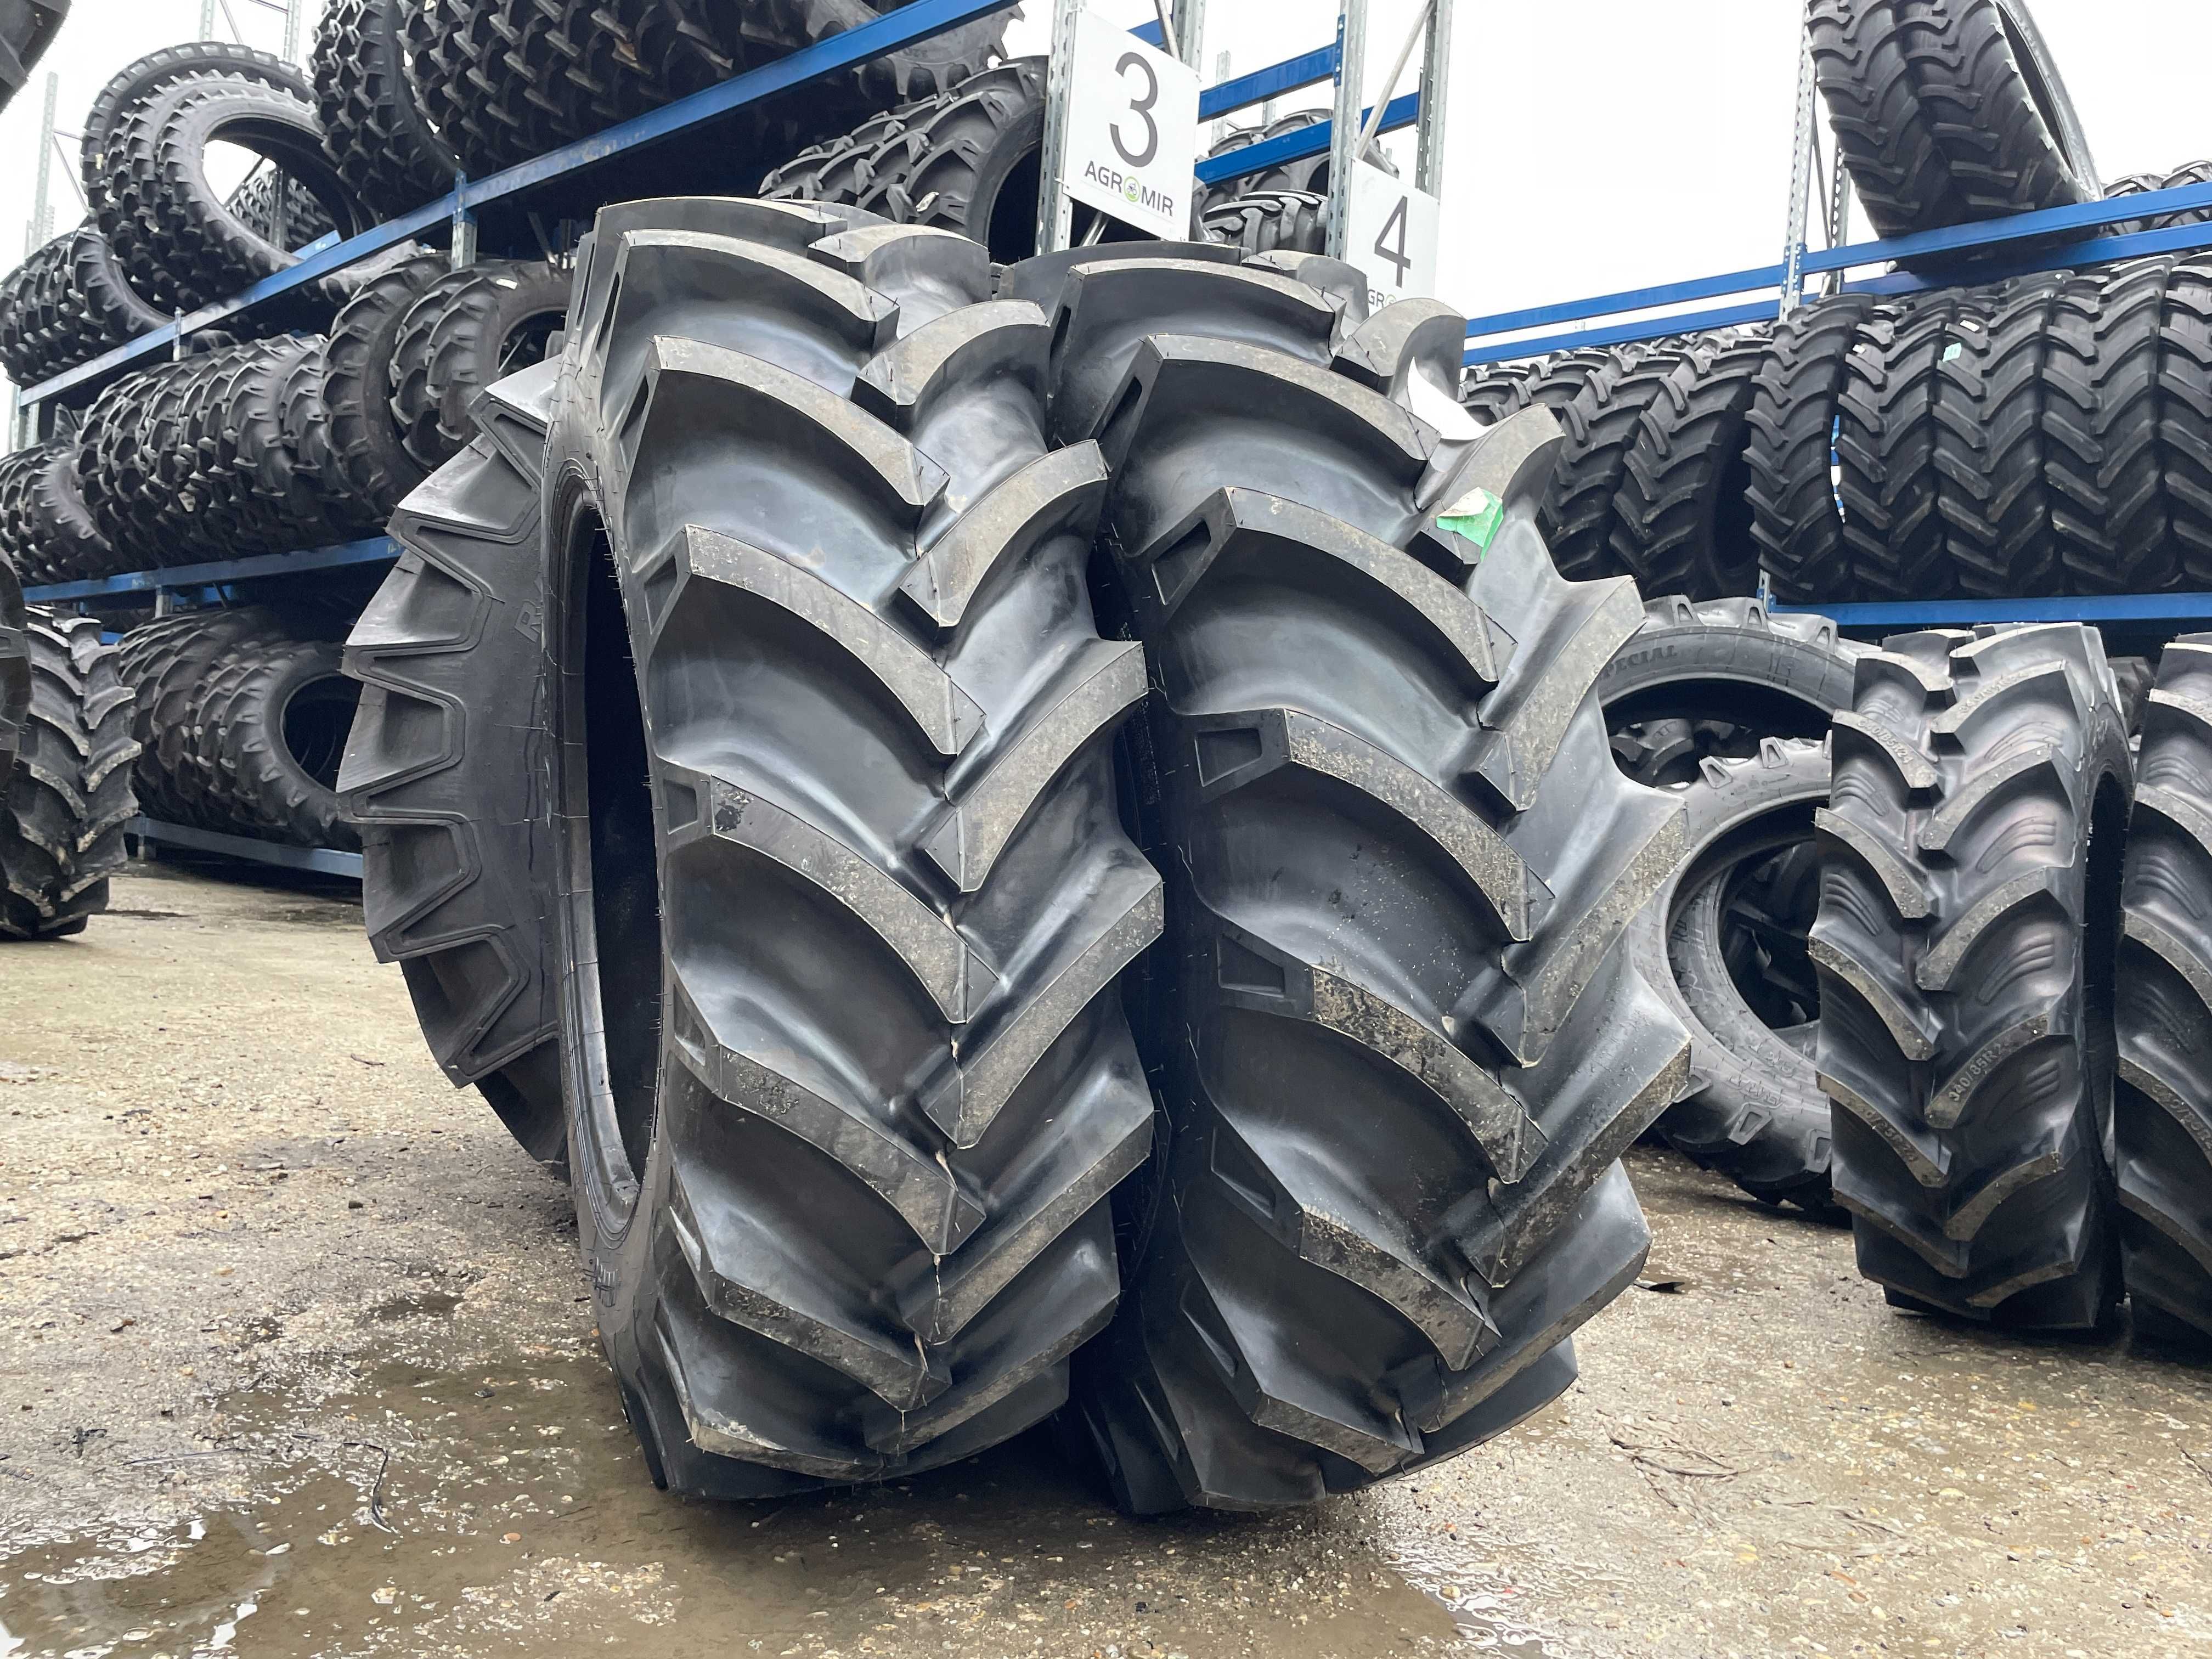 OZKA Anvelope noi agricole de tractor 16.9-30 livrare rapida 10pliuri